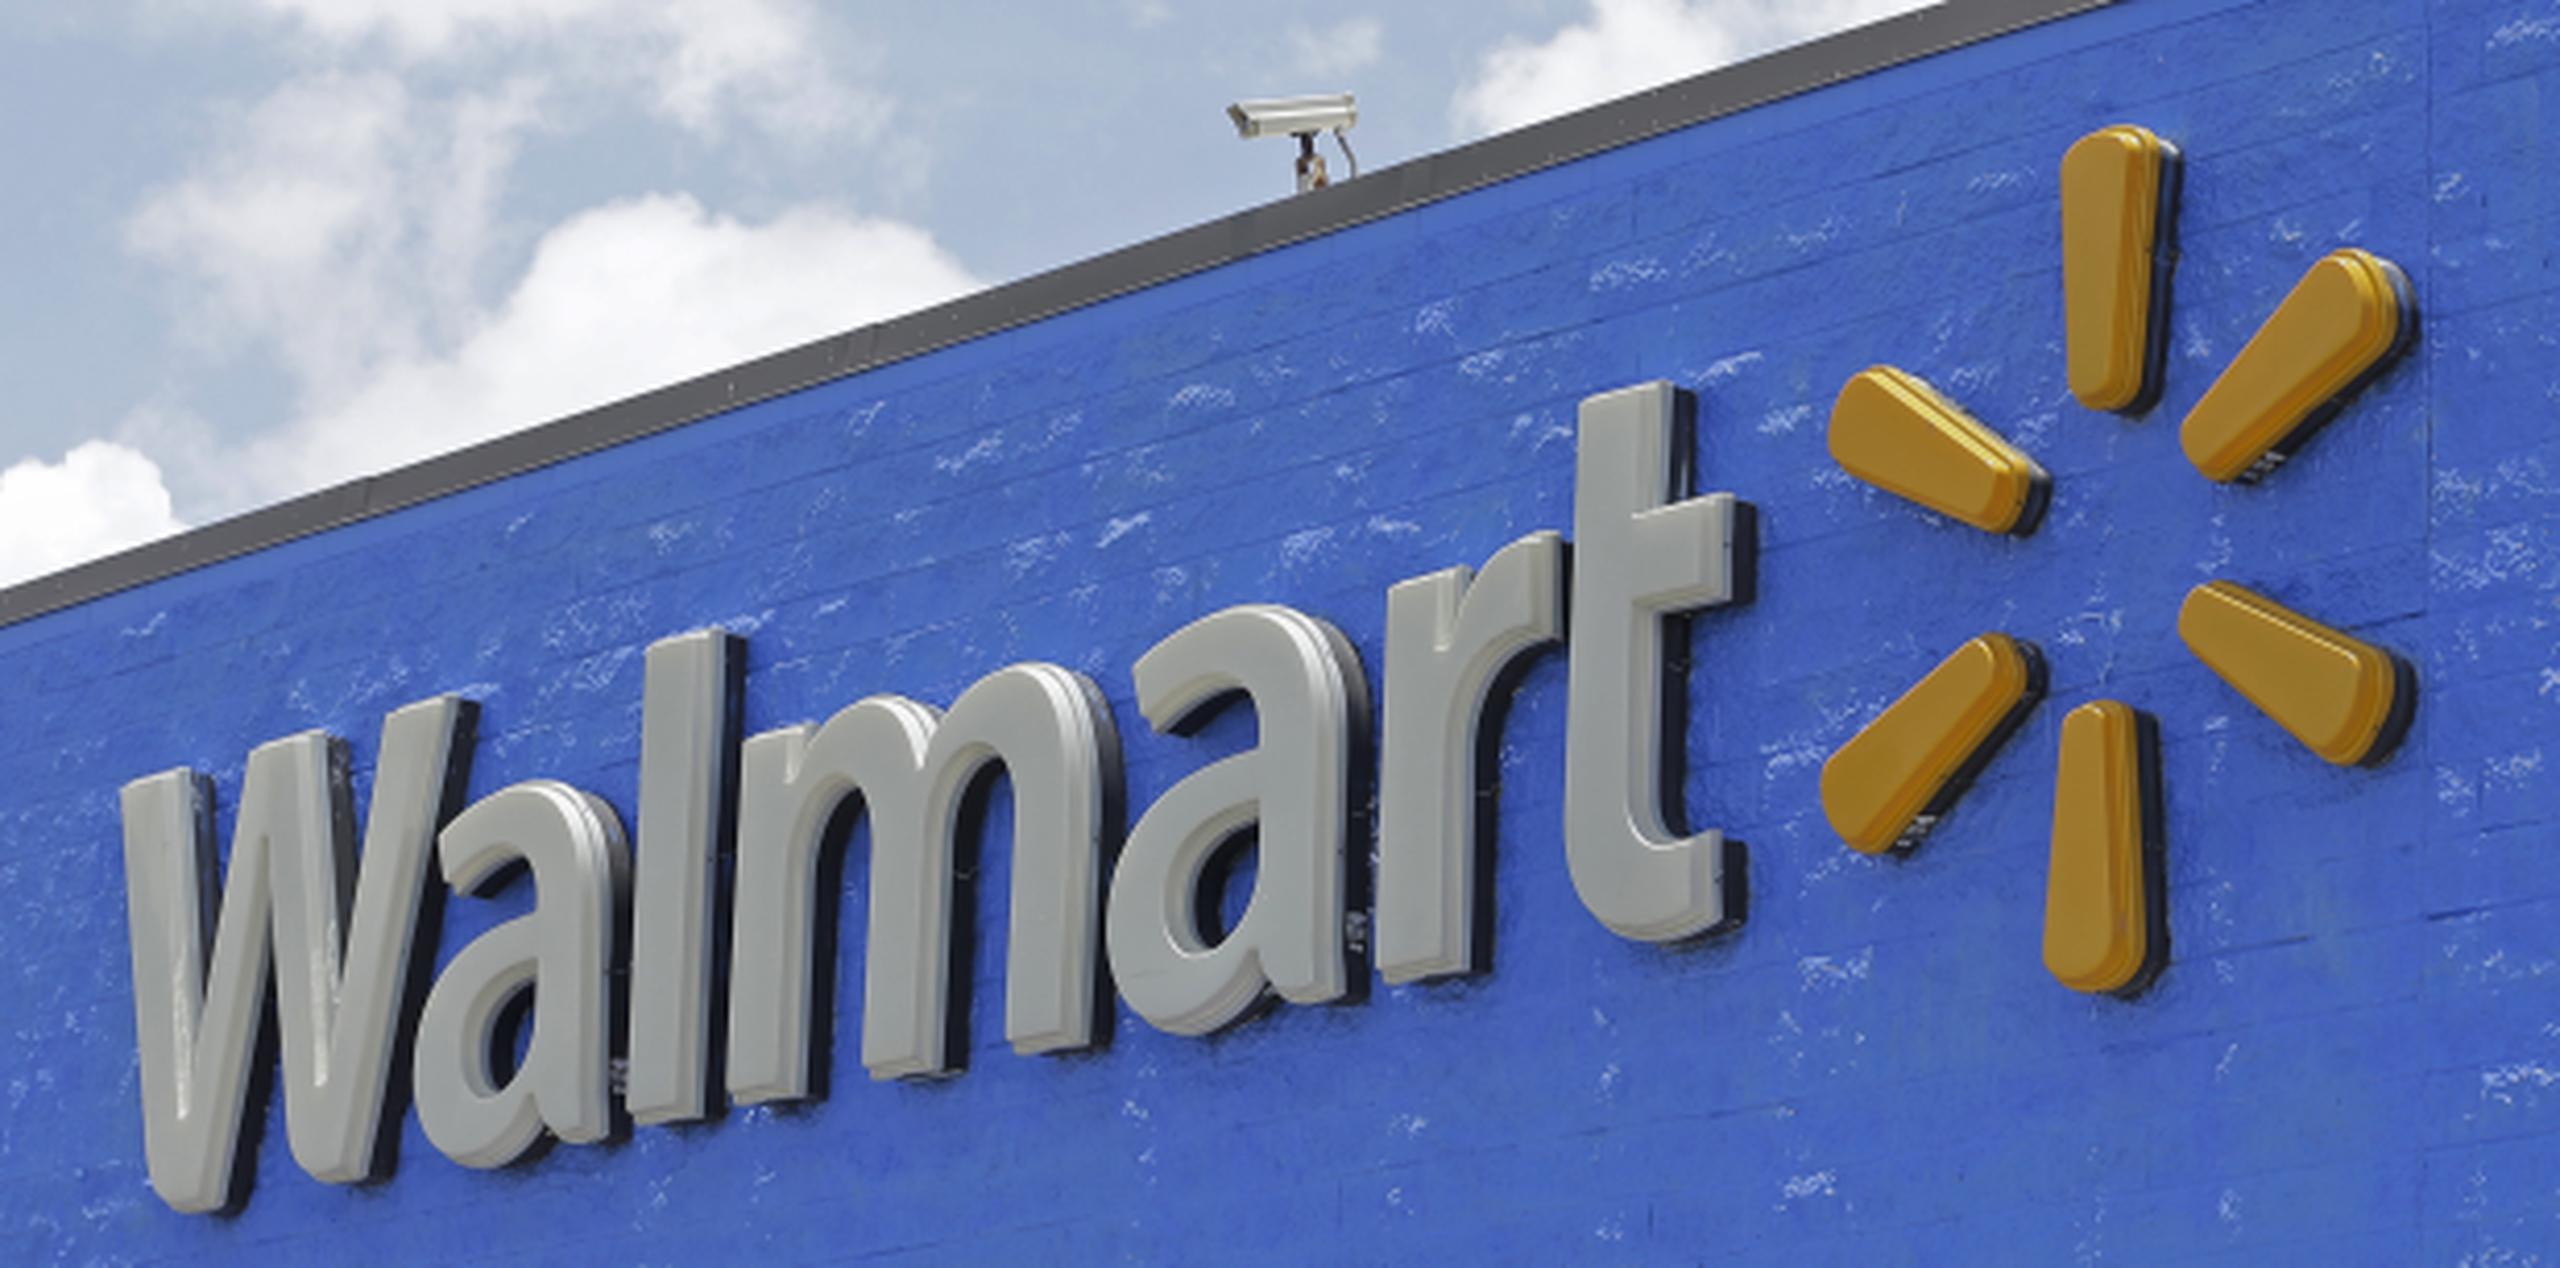 Walmart anunció en febrero pasado que cerró su ejercicio fiscal 2018 con unos beneficios netos de 9,862 millones de dólares, un 27.7% menos que el año anterior. (AP / Alan Diaz)